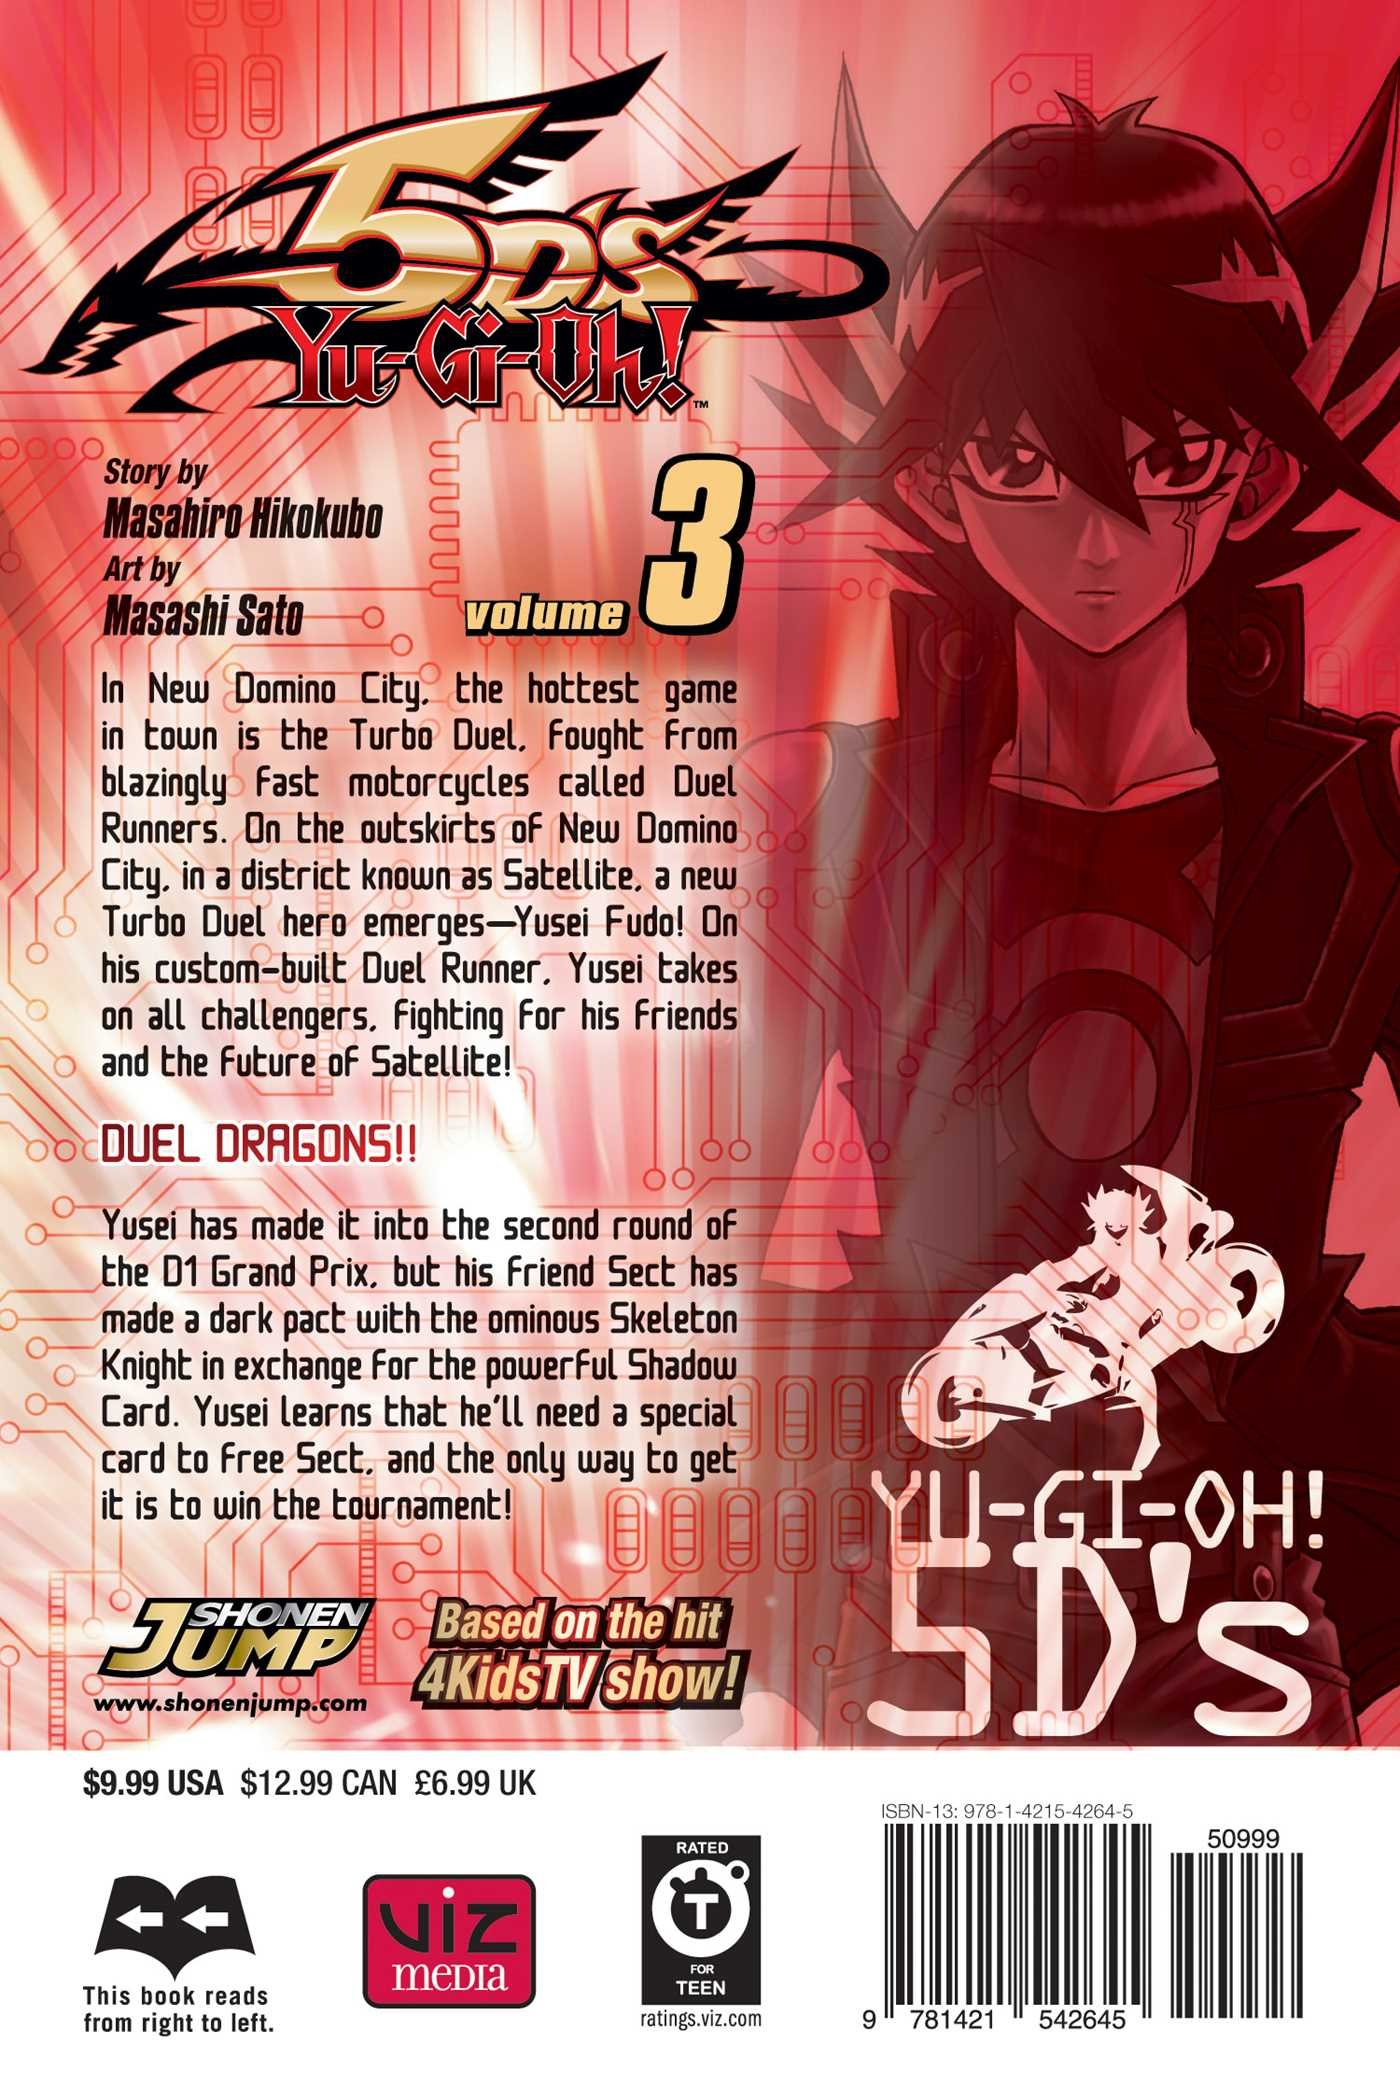 Yu-Gi-Oh! 5D's, Vol. 9 (9)